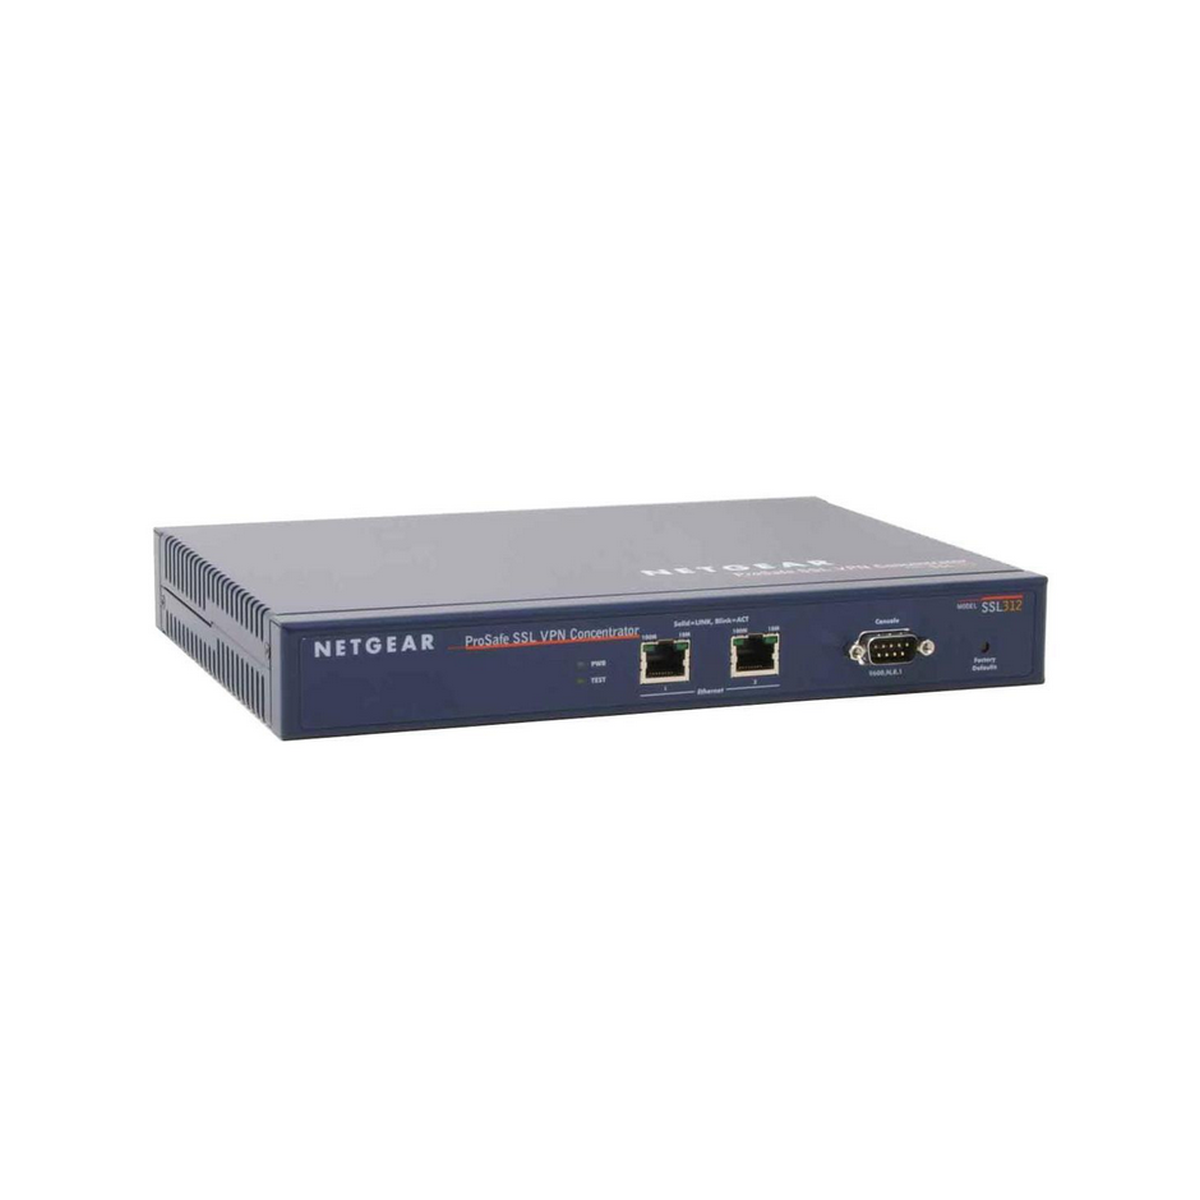 VPN CONCETRATOR NETGEAR PROSAFE SSL312 2x10/100Mpb